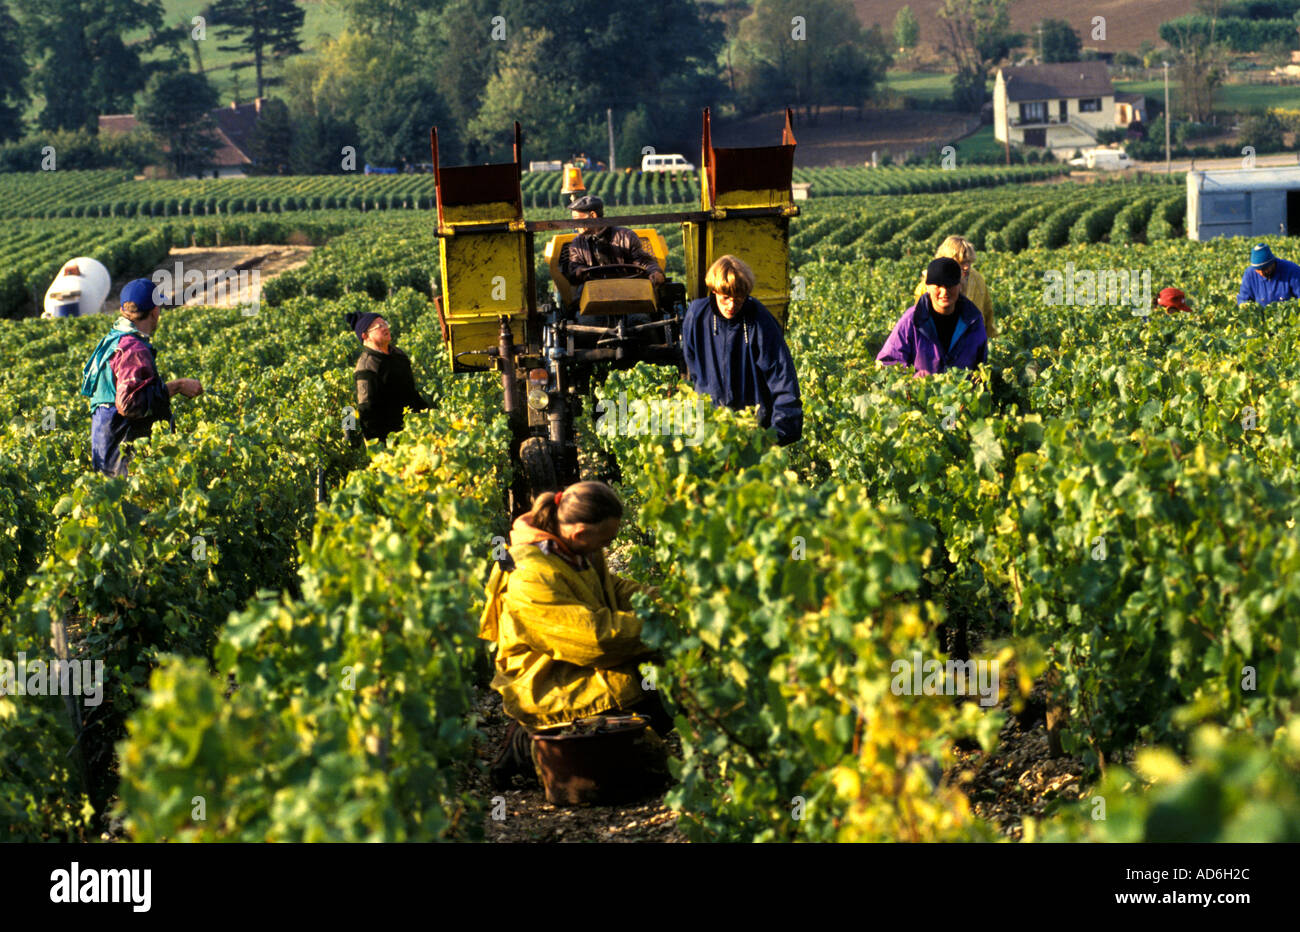 Le Beaujolais est une région viticole importante de l'est de la France, célèbre pour ses vins rouges fruités et vibrants fabriqués à partir de Gamay. Banque D'Images